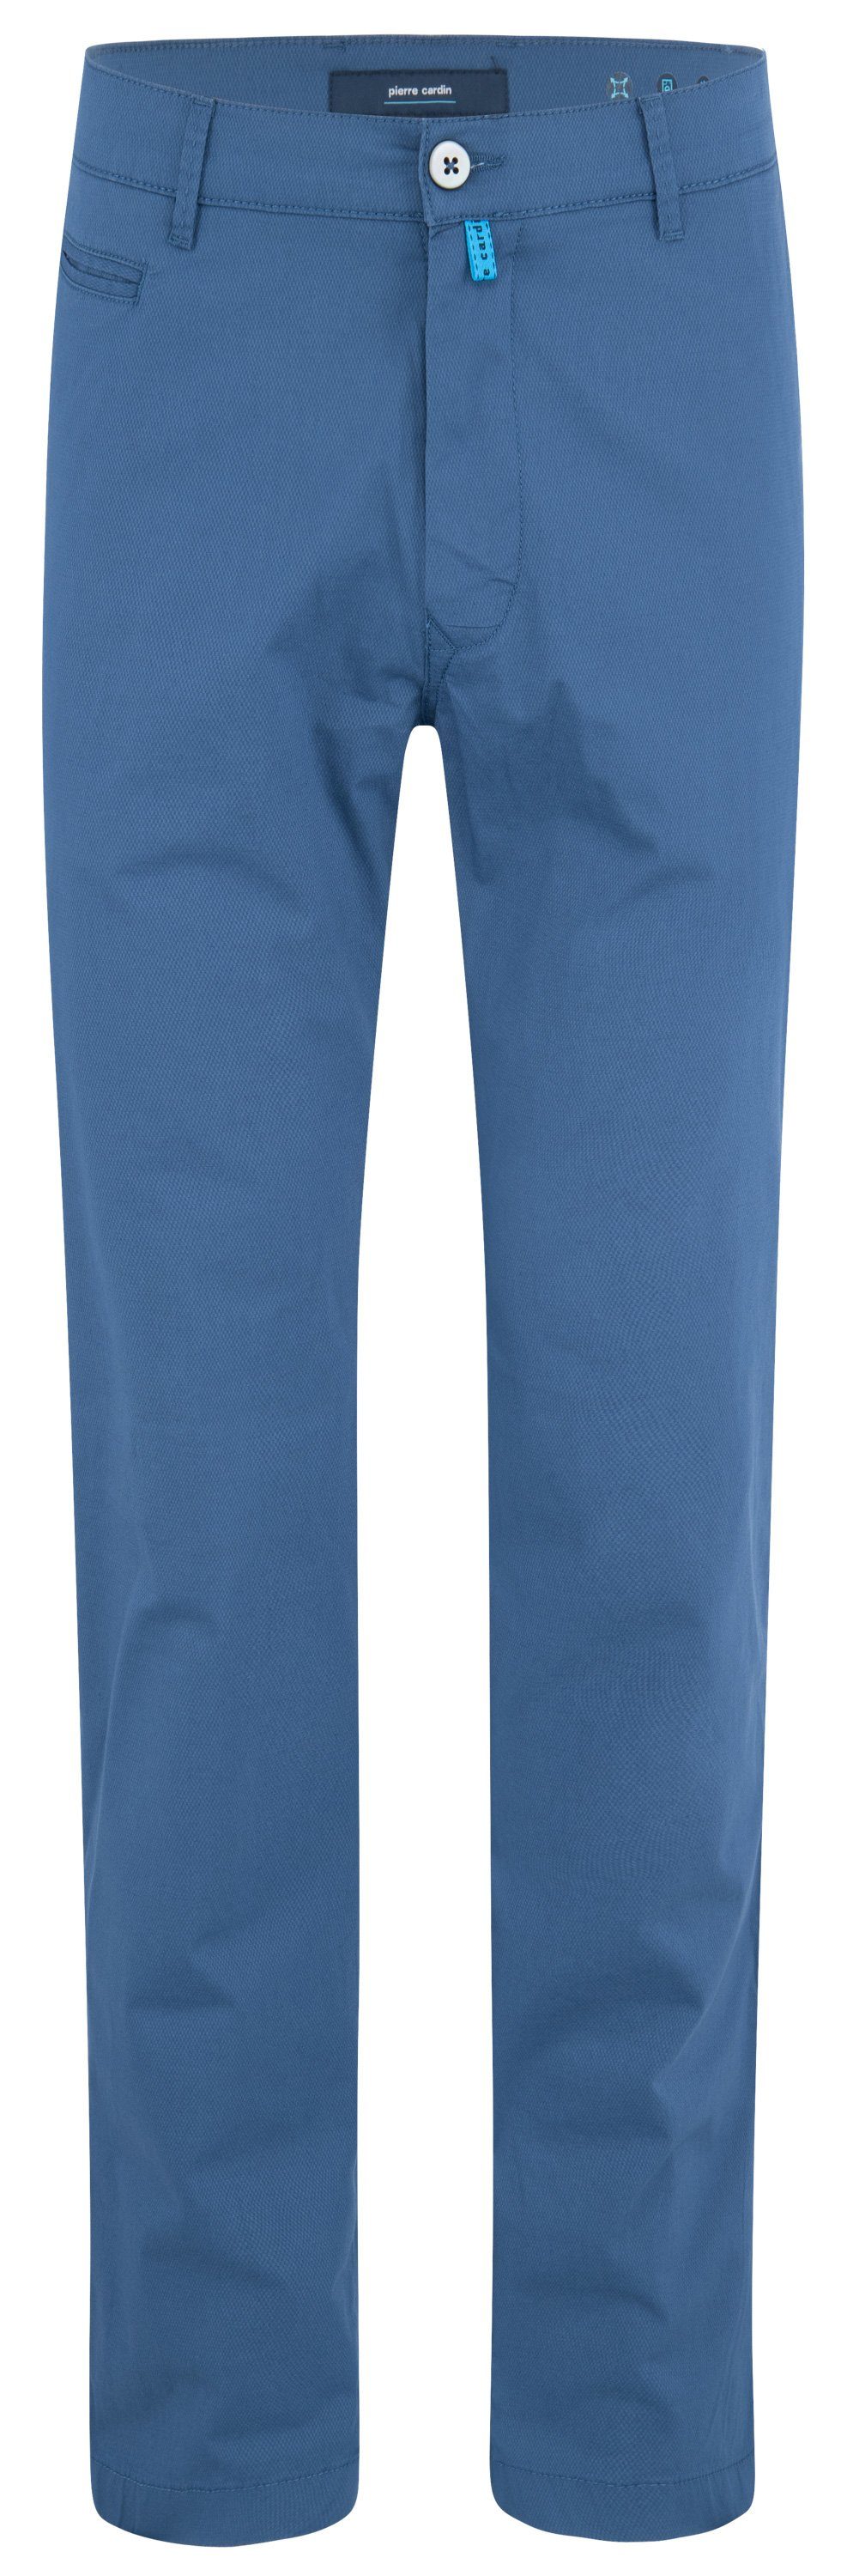 Pierre Cardin 5-Pocket-Jeans PIERRE CARDIN LYON dark denim 33757 4002.6214 - FUTUREFLEX